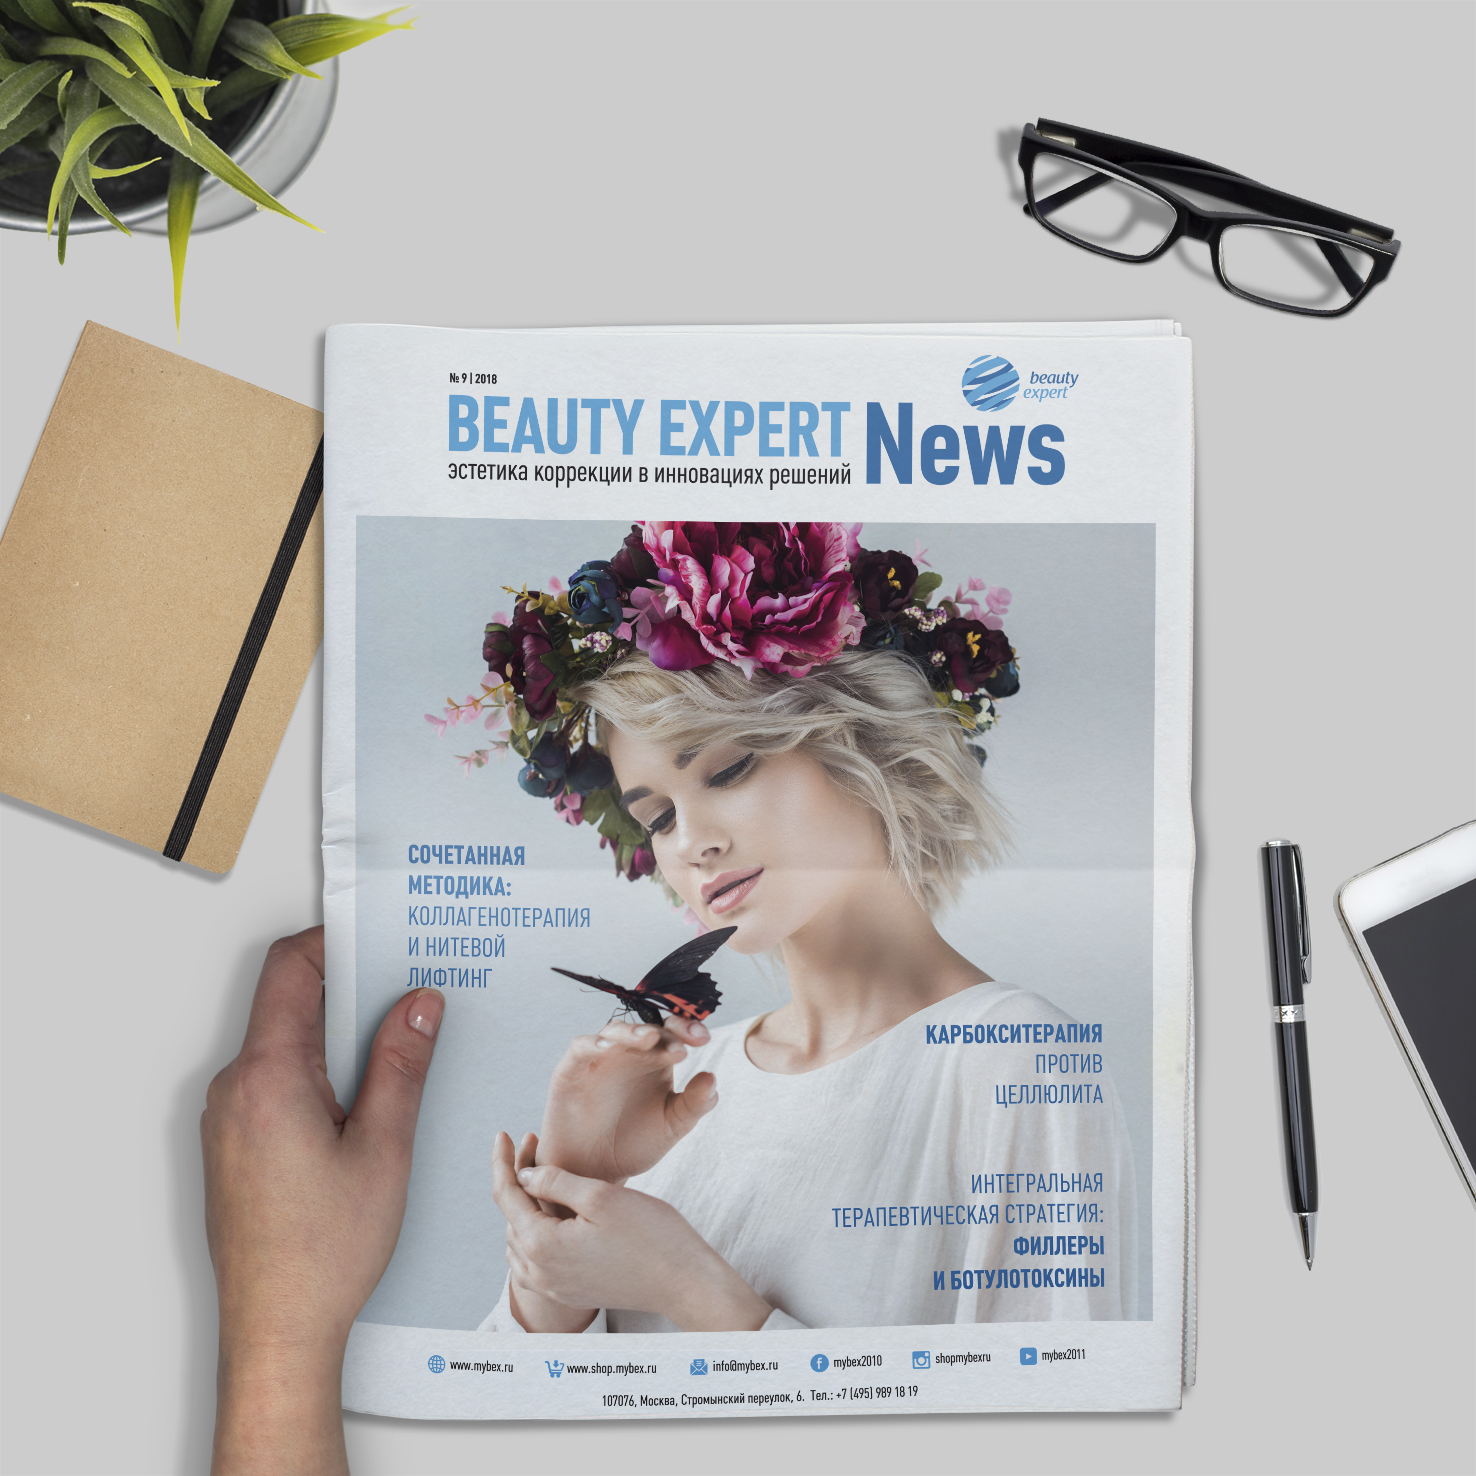 Новый осенний выпуск Beauty Expert News